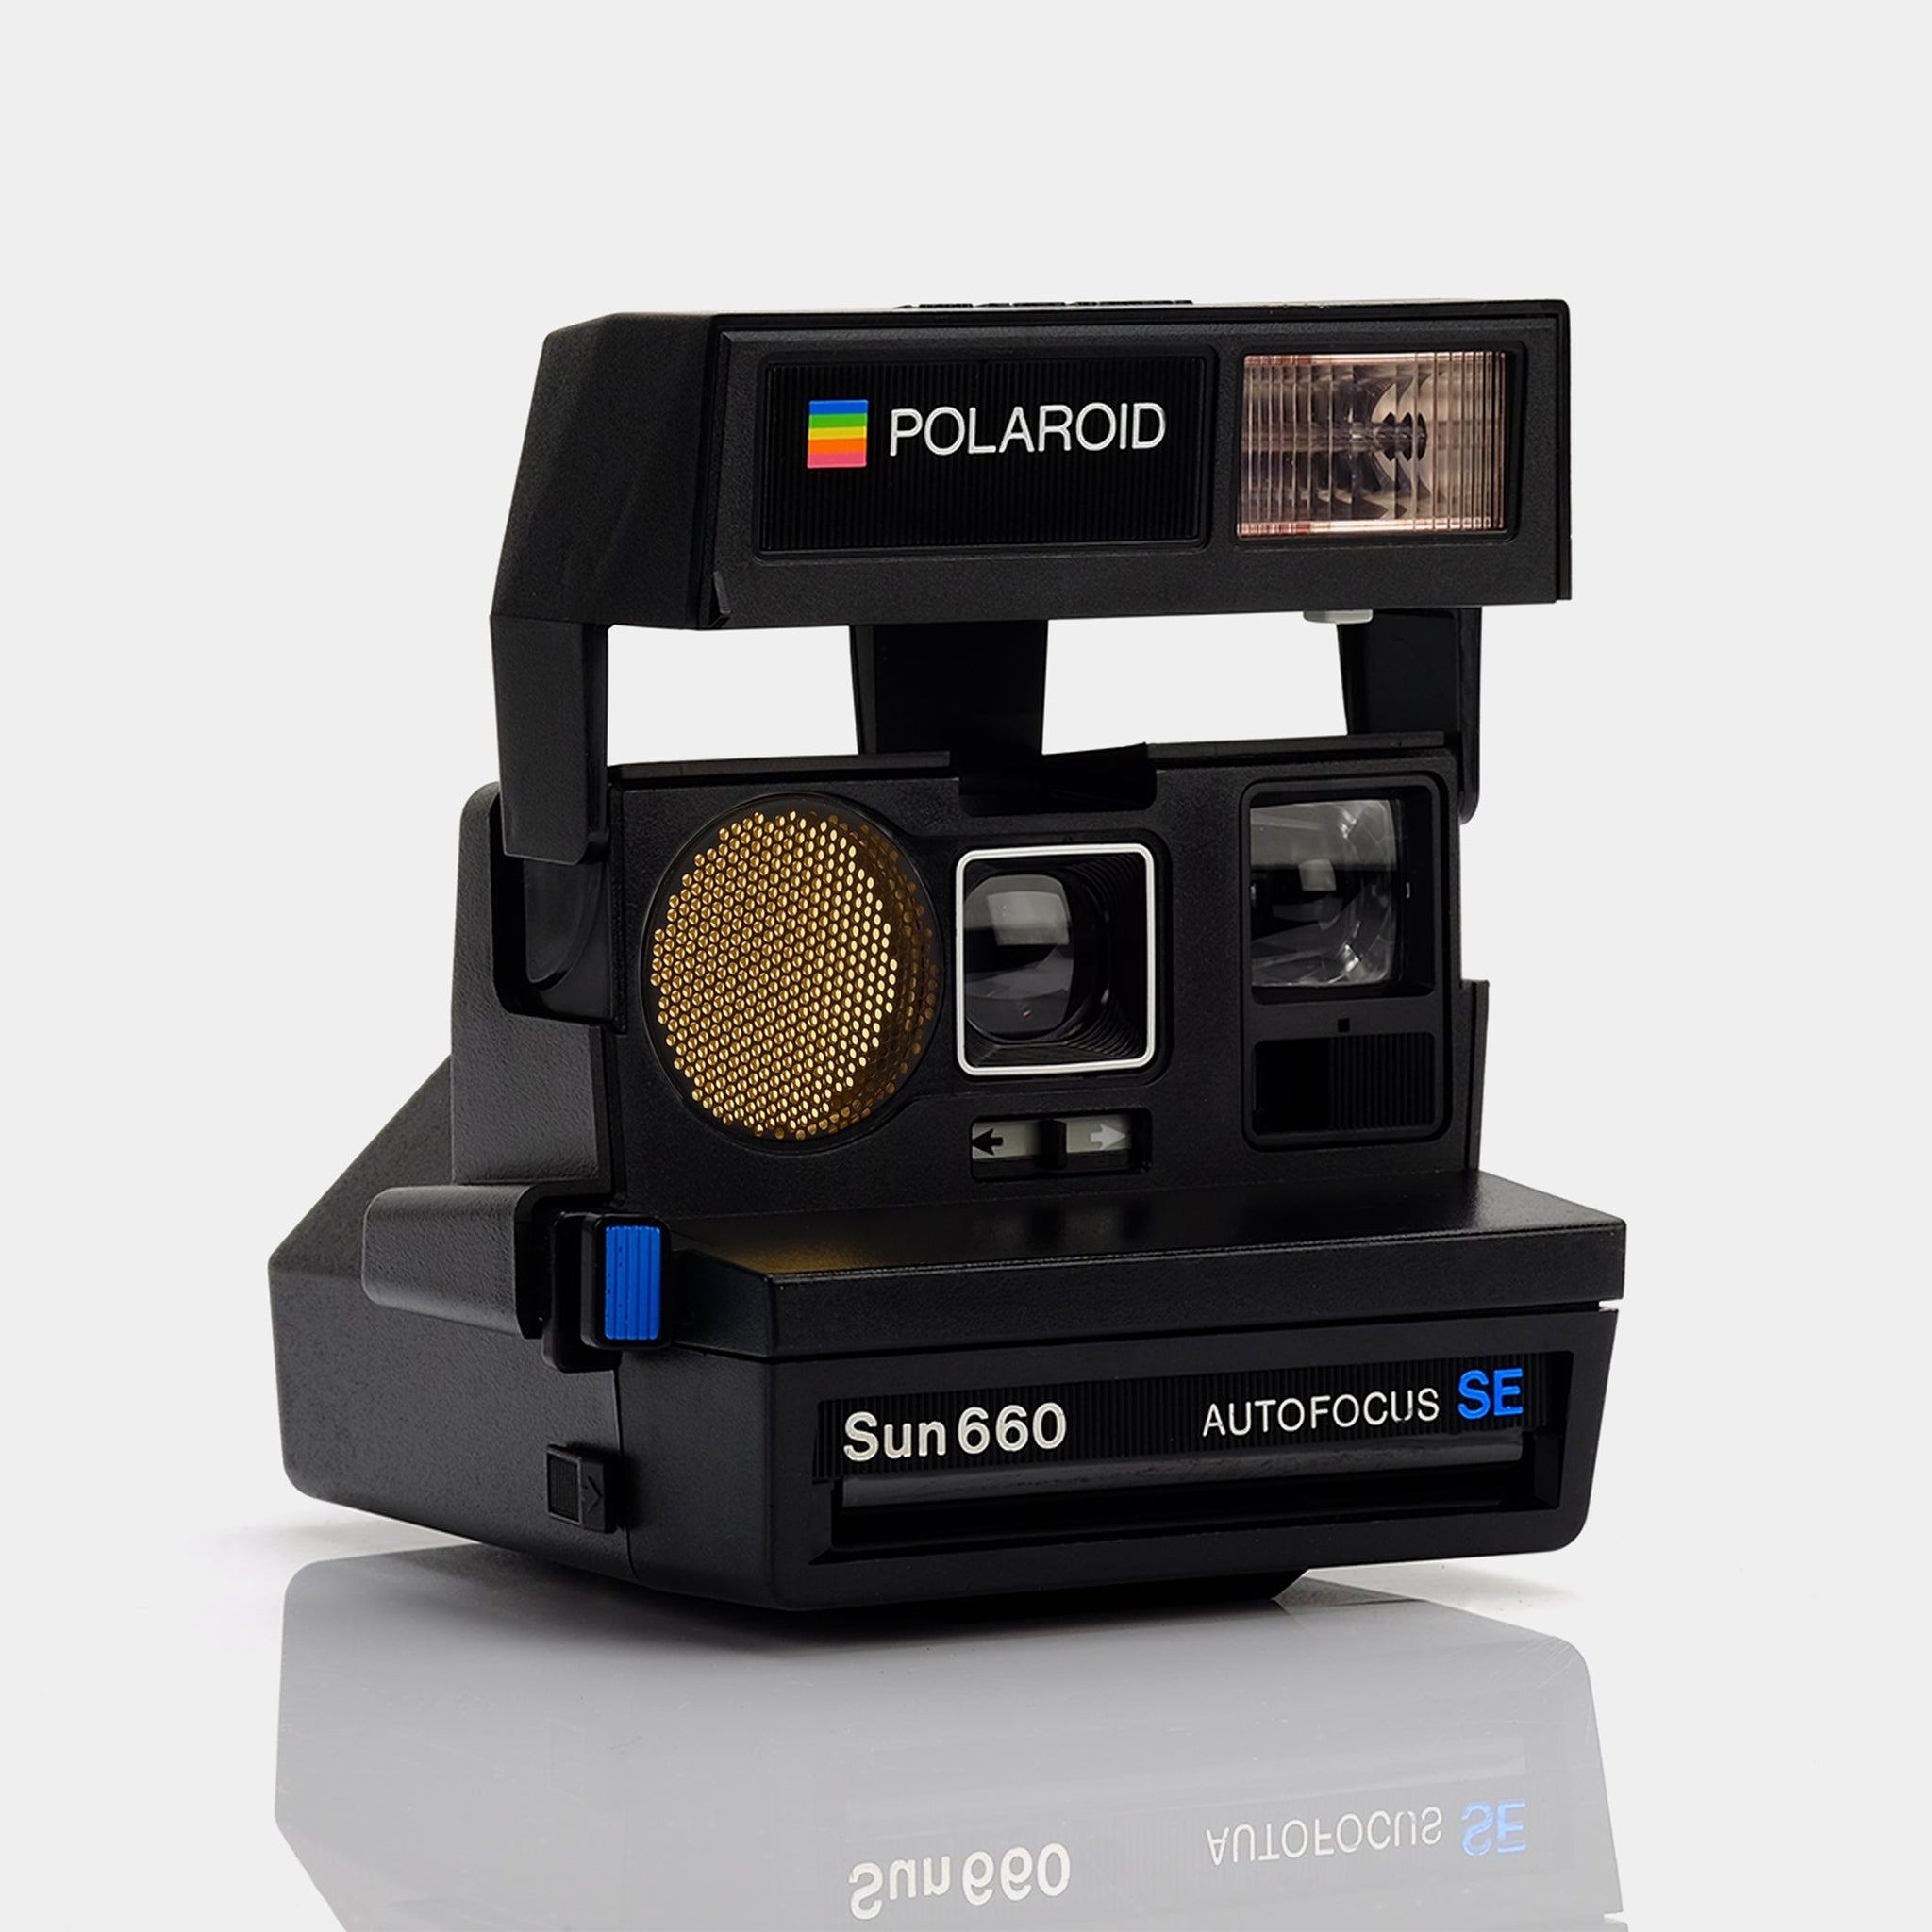 Polaroid 600 Sun660 Autofocus SE Instant Film Camera